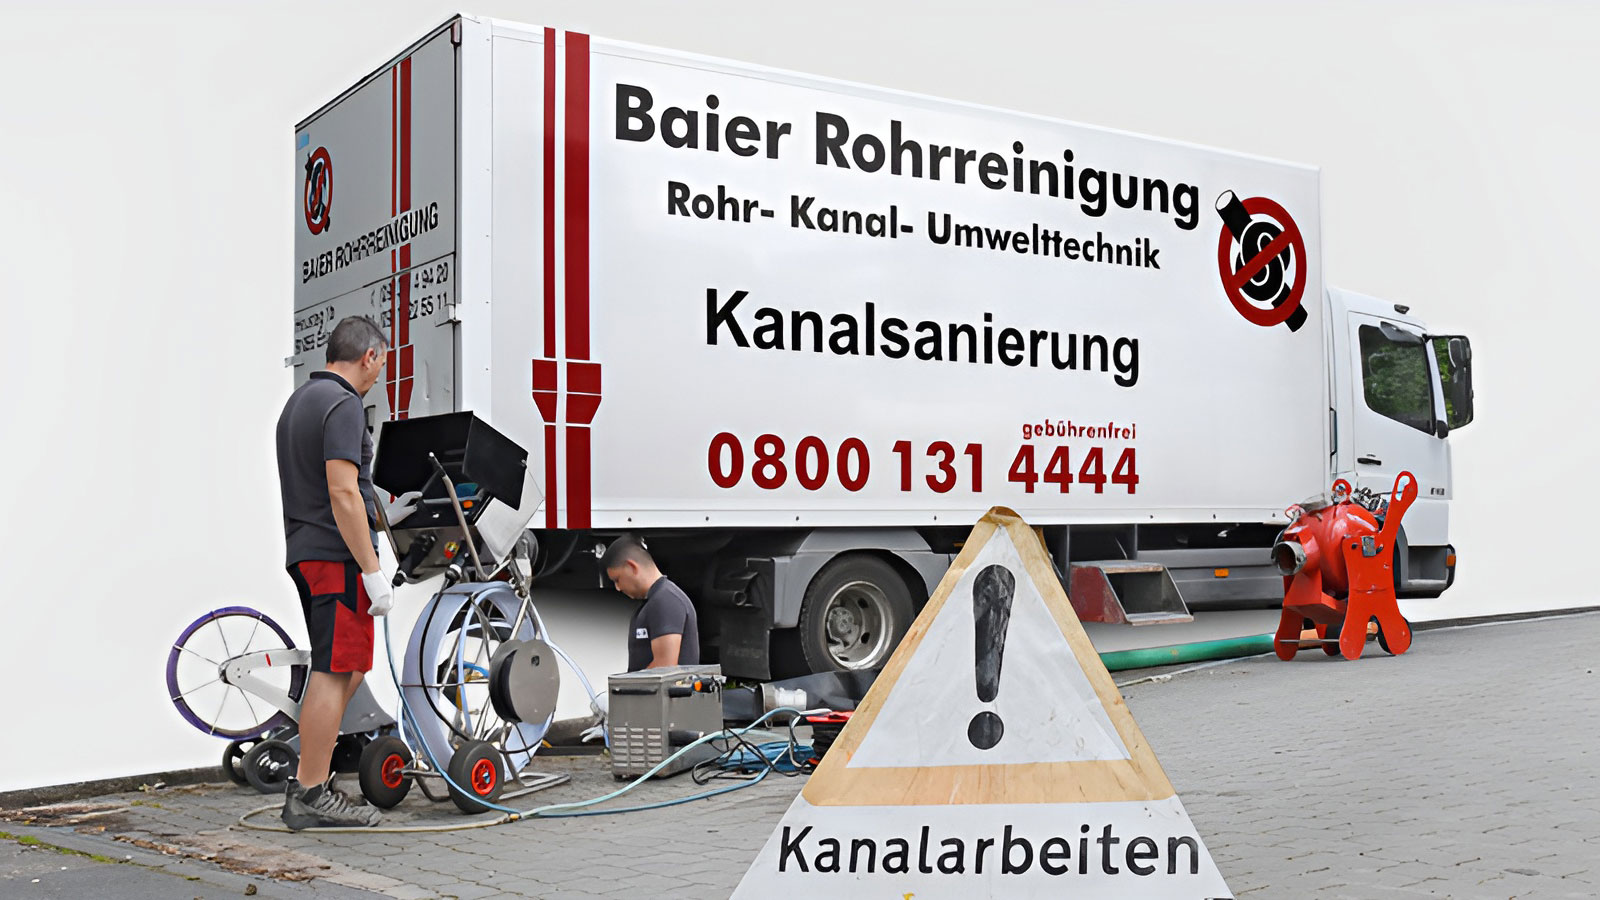 Baier Rohrreinigung GmbH Erlangen